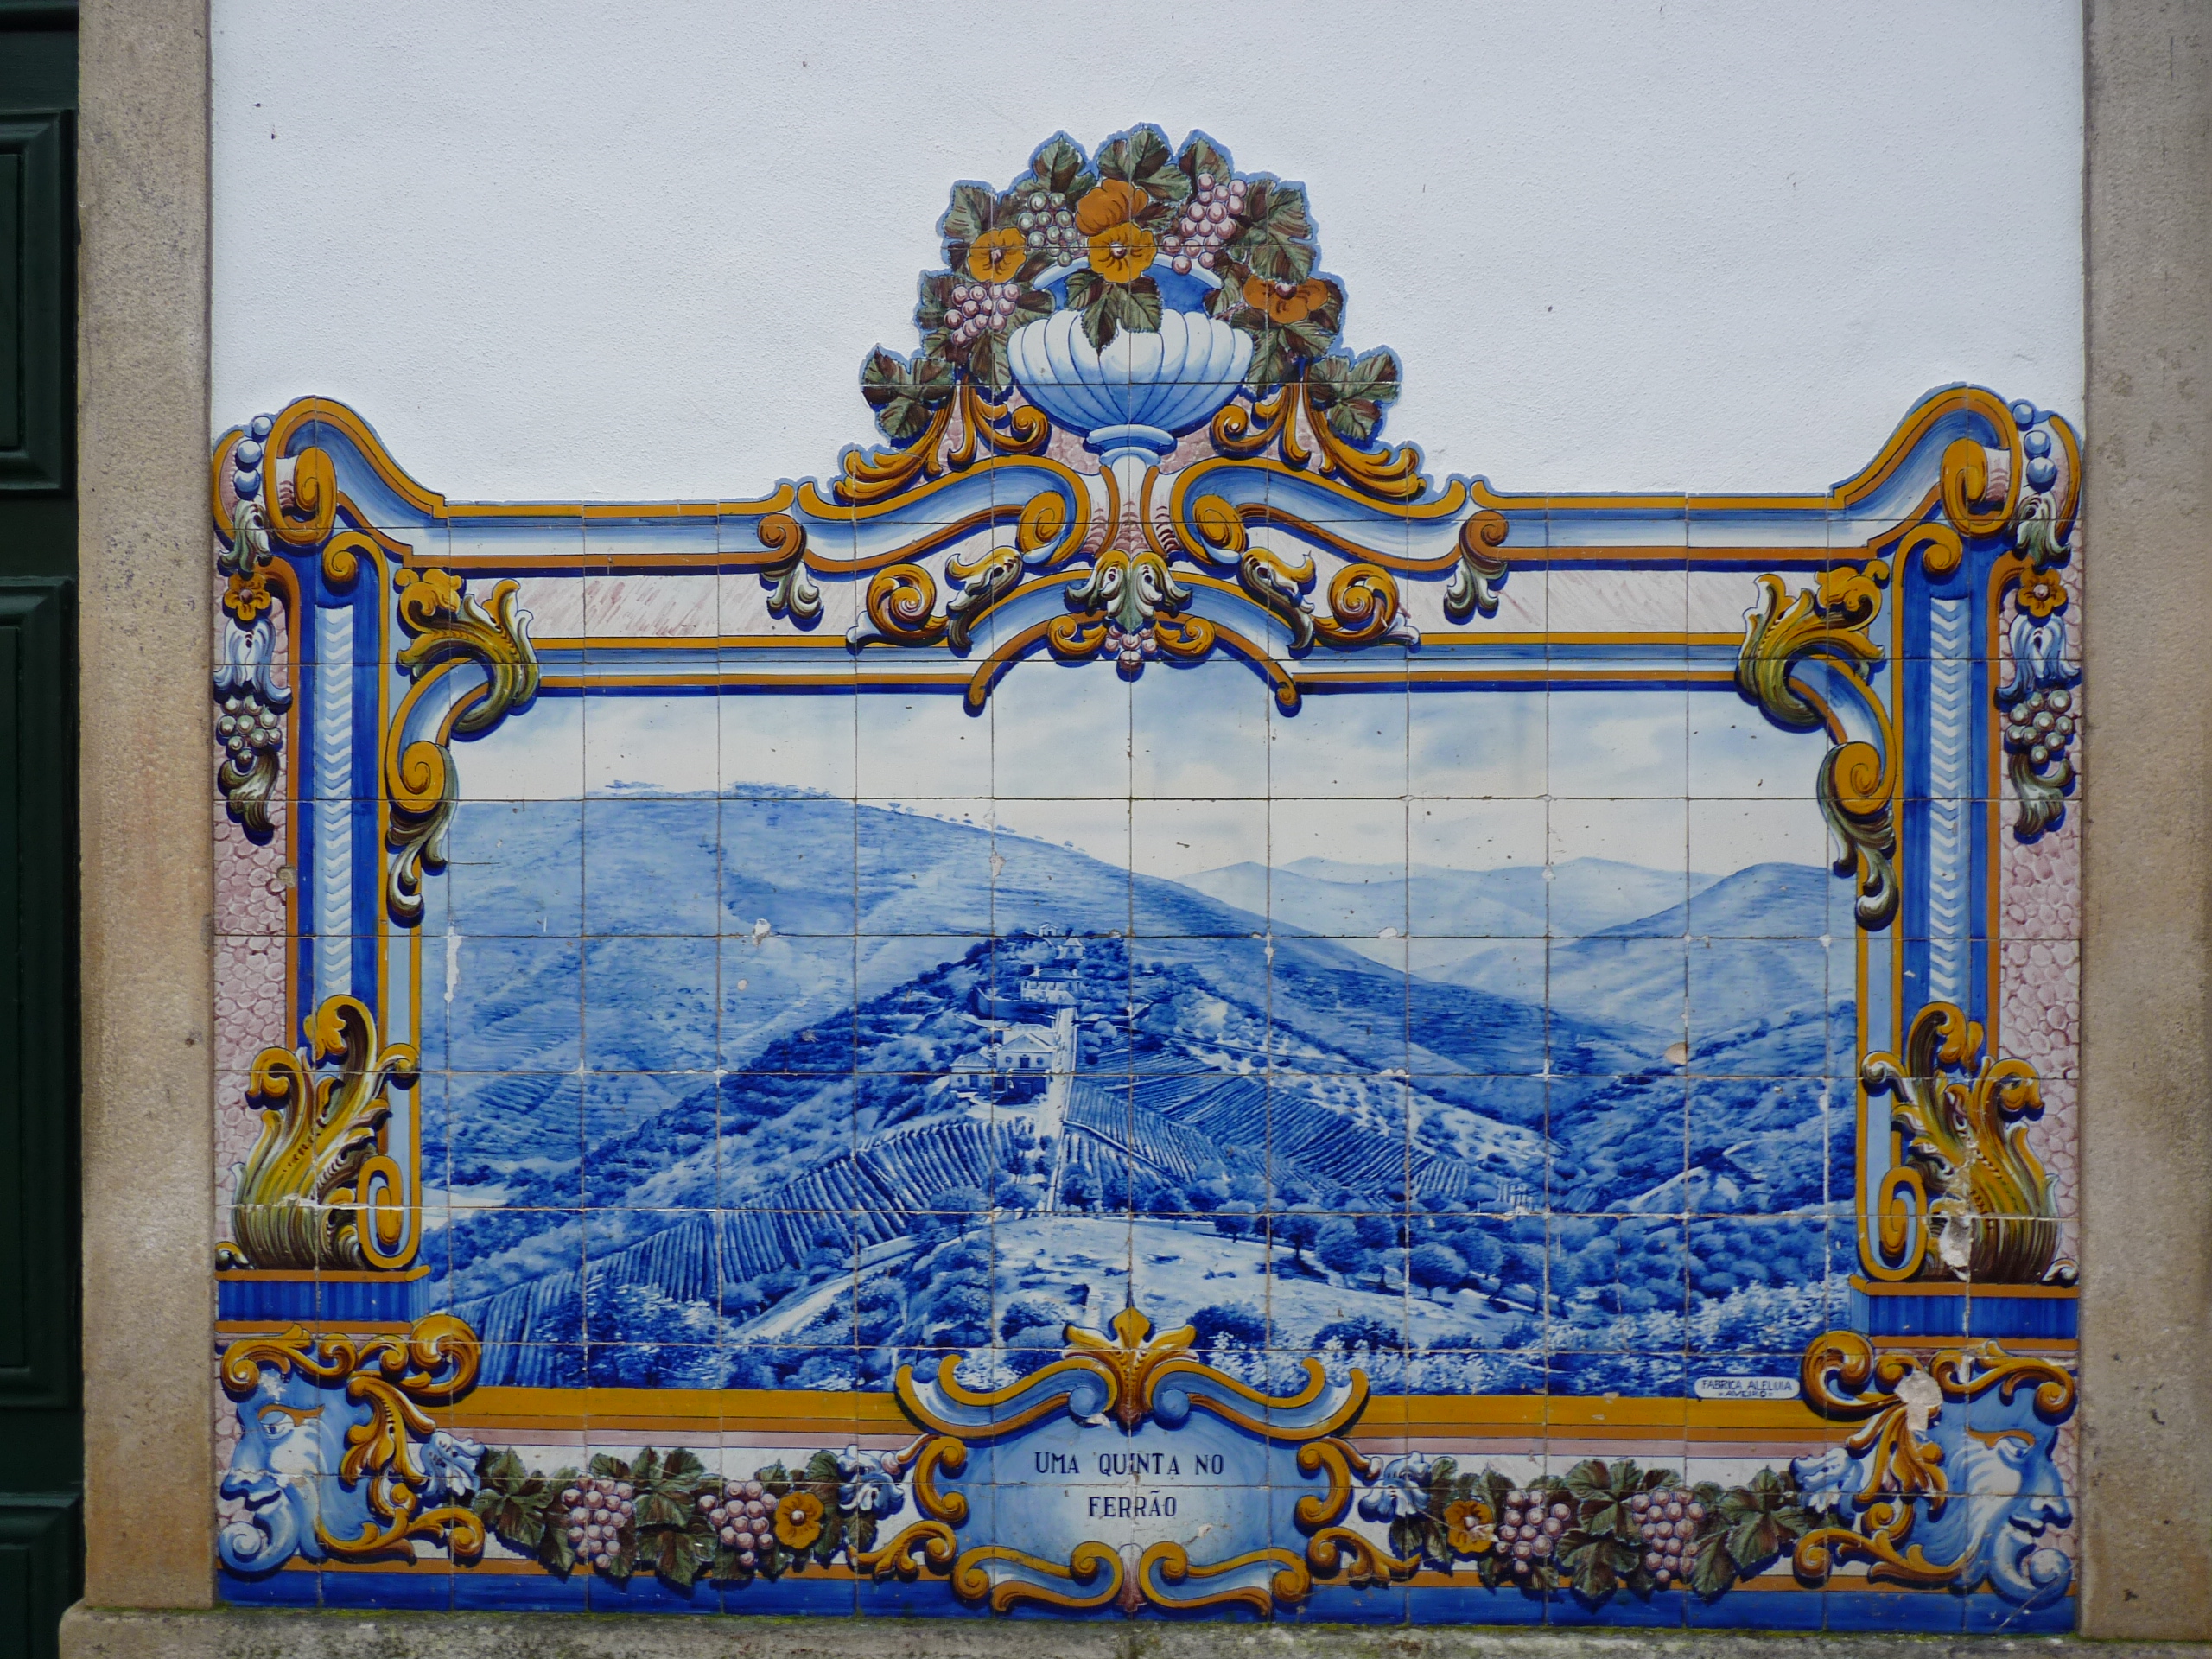 File:Painel de Azuleijo Quinta da região vinhateira em Pinhão.jpg - Wikimedia Commons